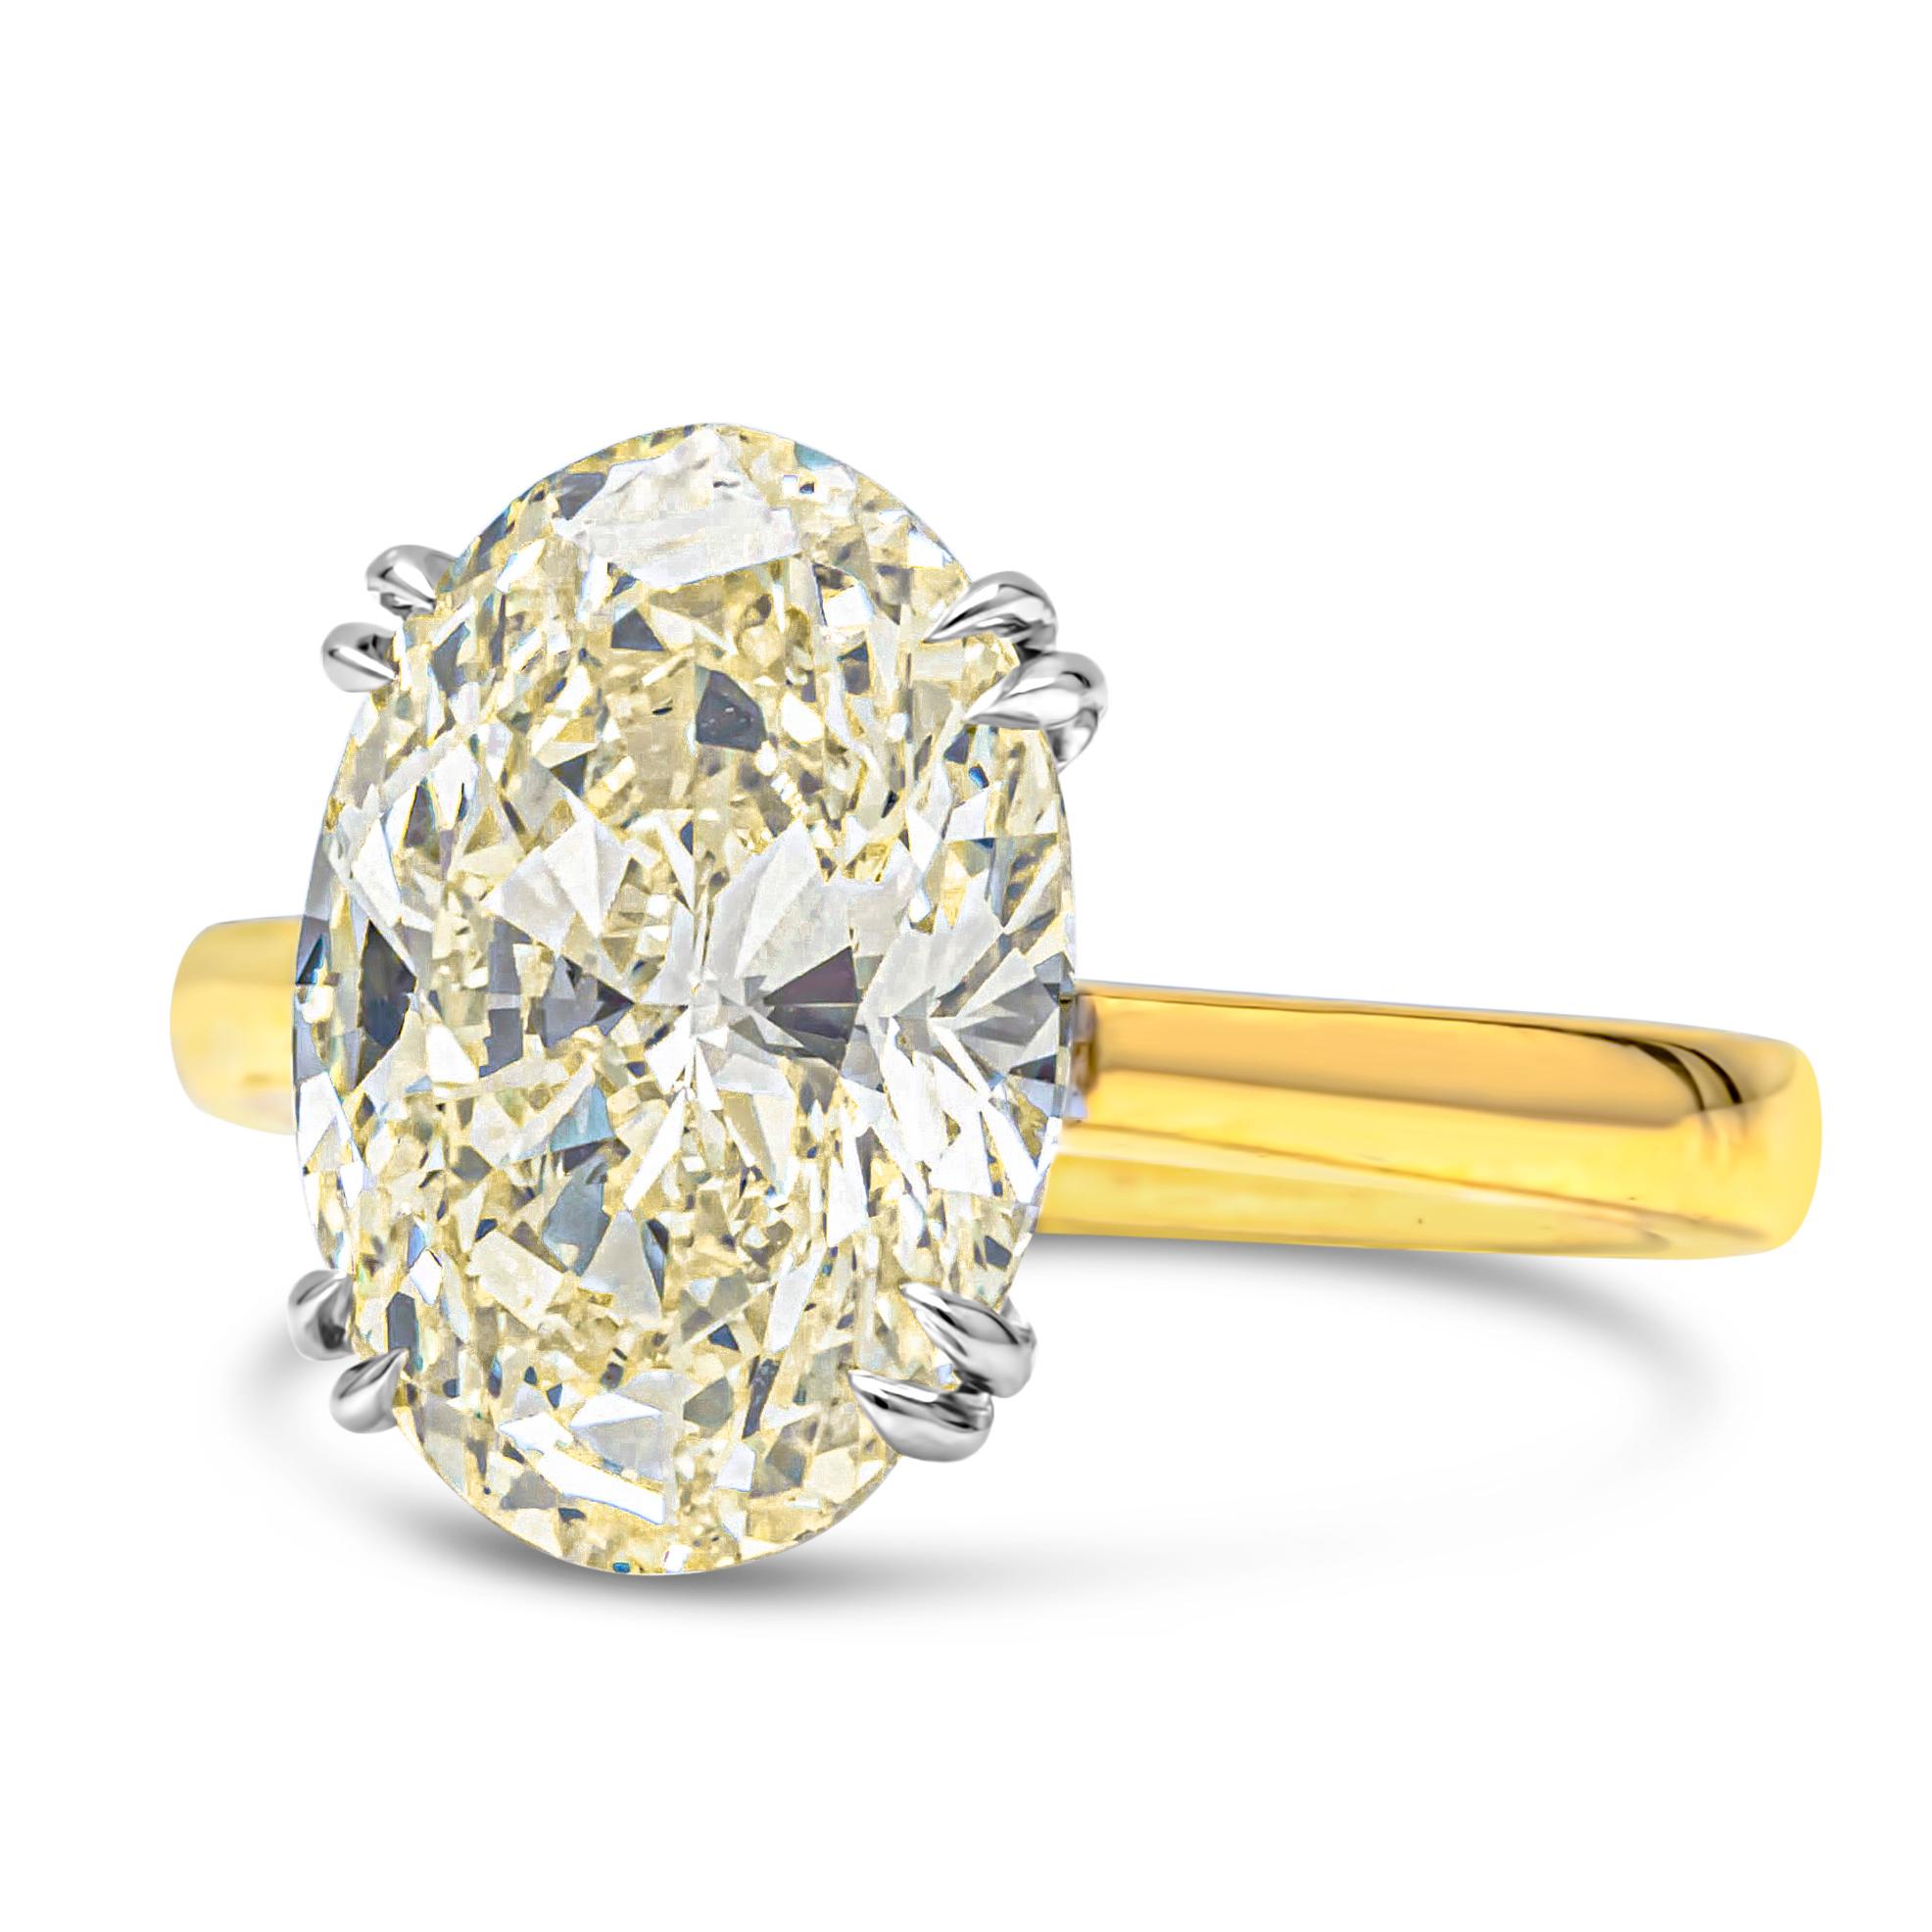 Cette magnifique bague de fiançailles solitaire de haute joaillerie met en valeur un diamant de taille ovale de 5,47 carats certifié par le GIA, de couleur M et de pureté VVS2. Serti dans une monture à double griffe en platine et parfaitement